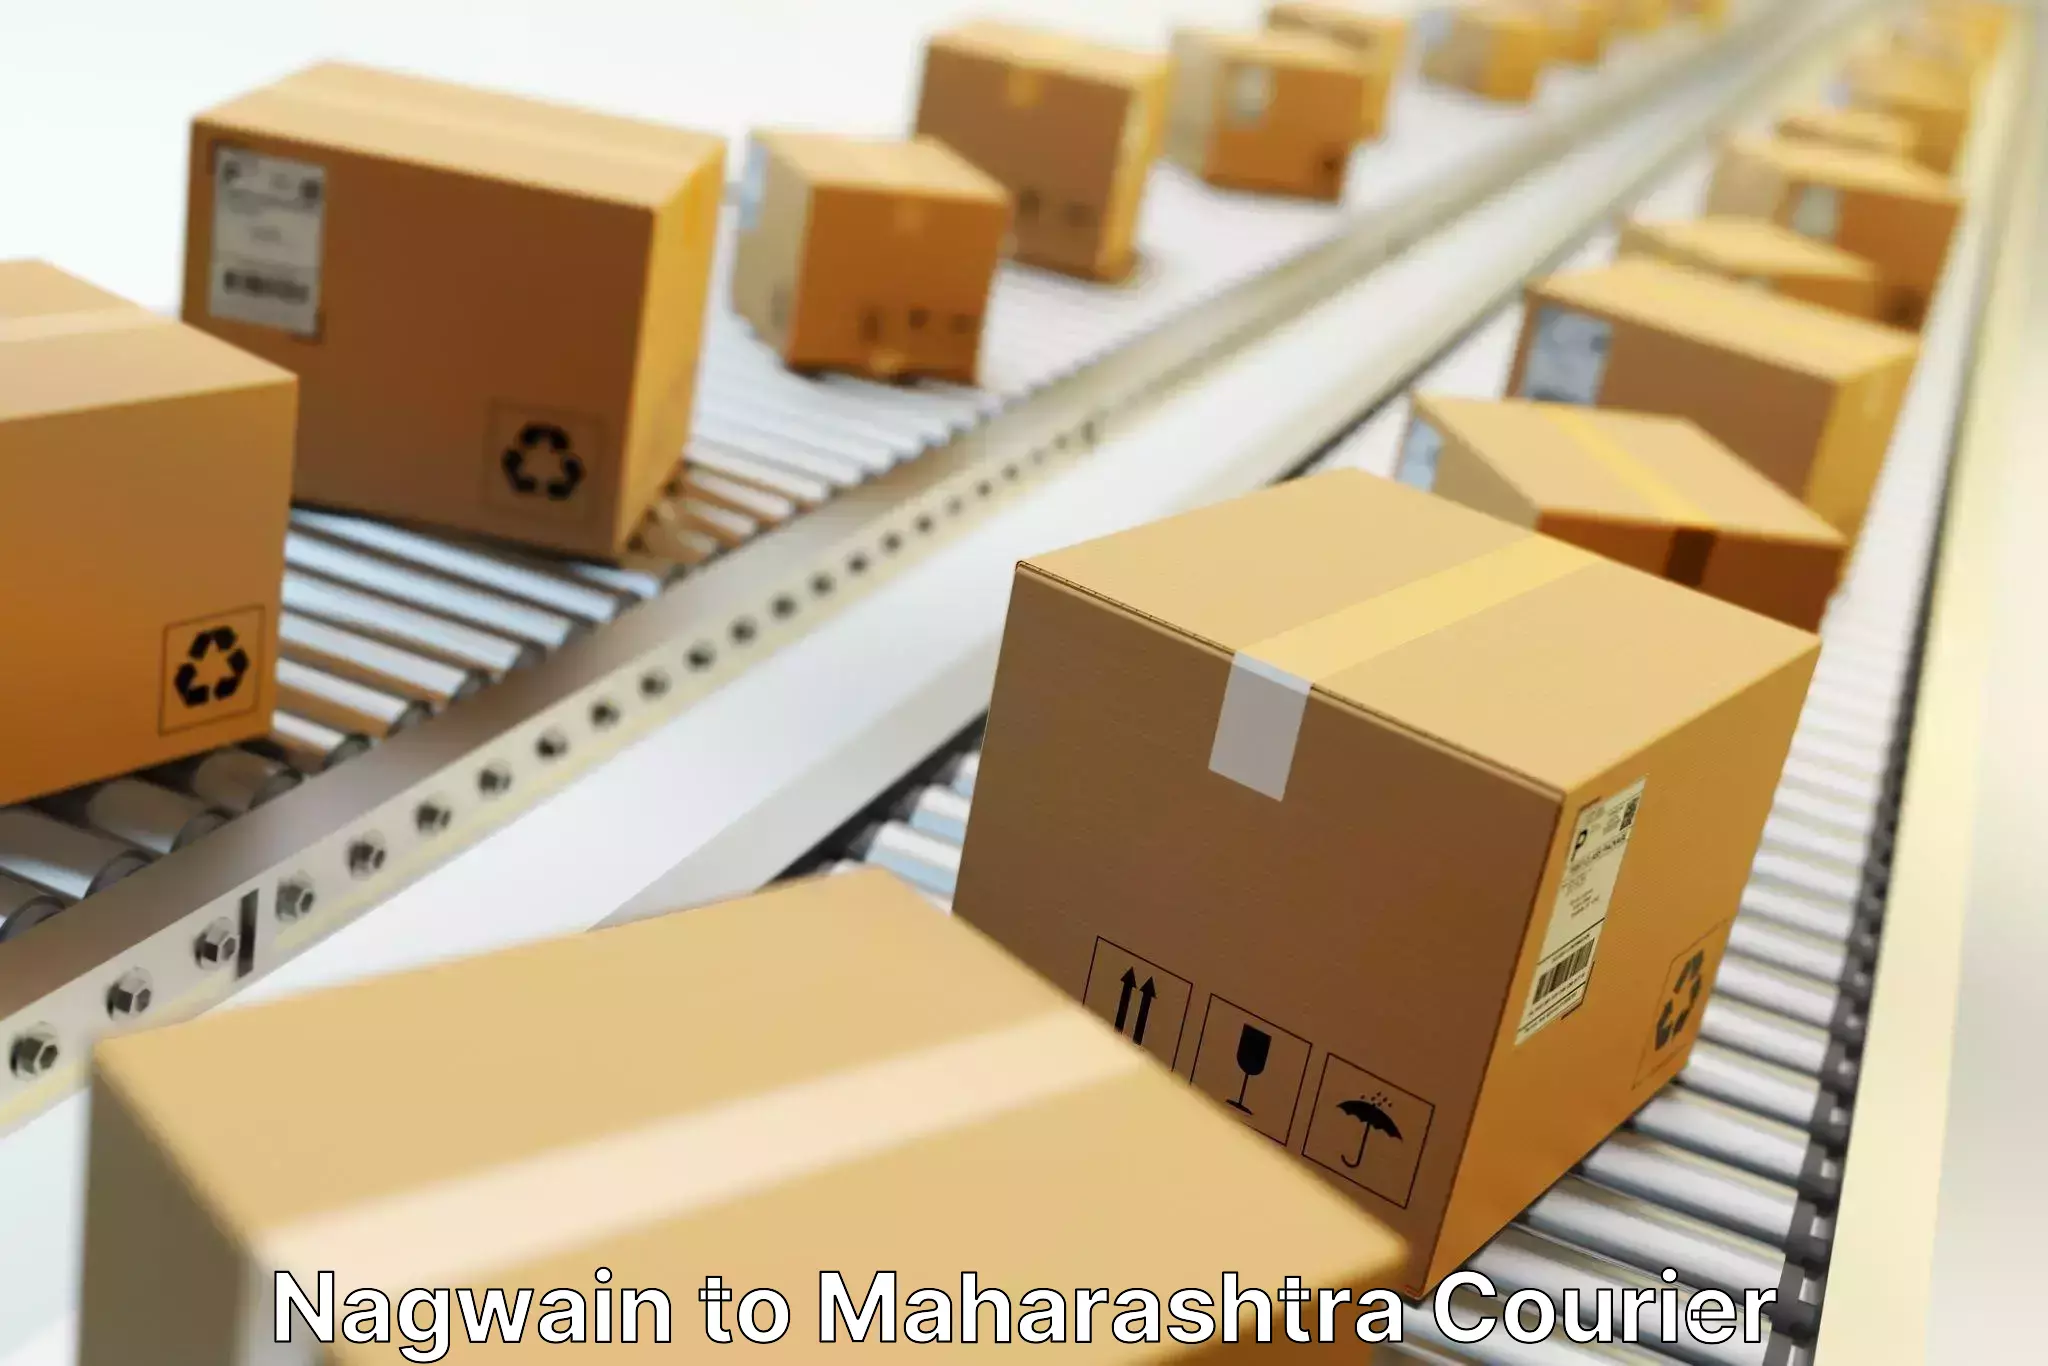 Nationwide shipping capabilities Nagwain to Maharashtra